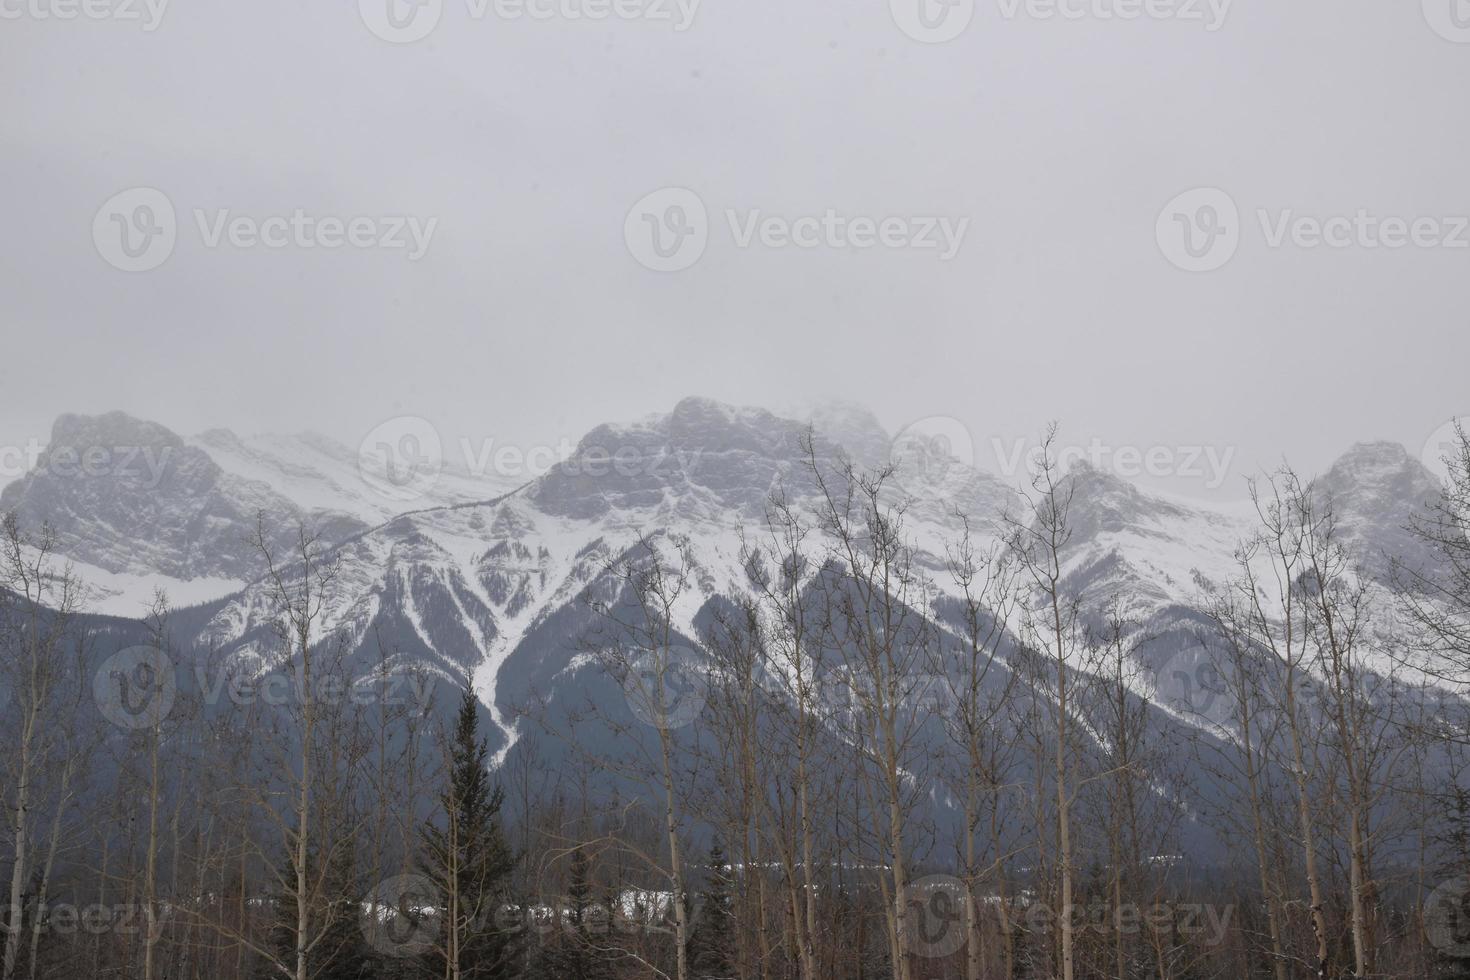 montagnes rocheuses couvertes de neige avec un ciel gris brumeux photo